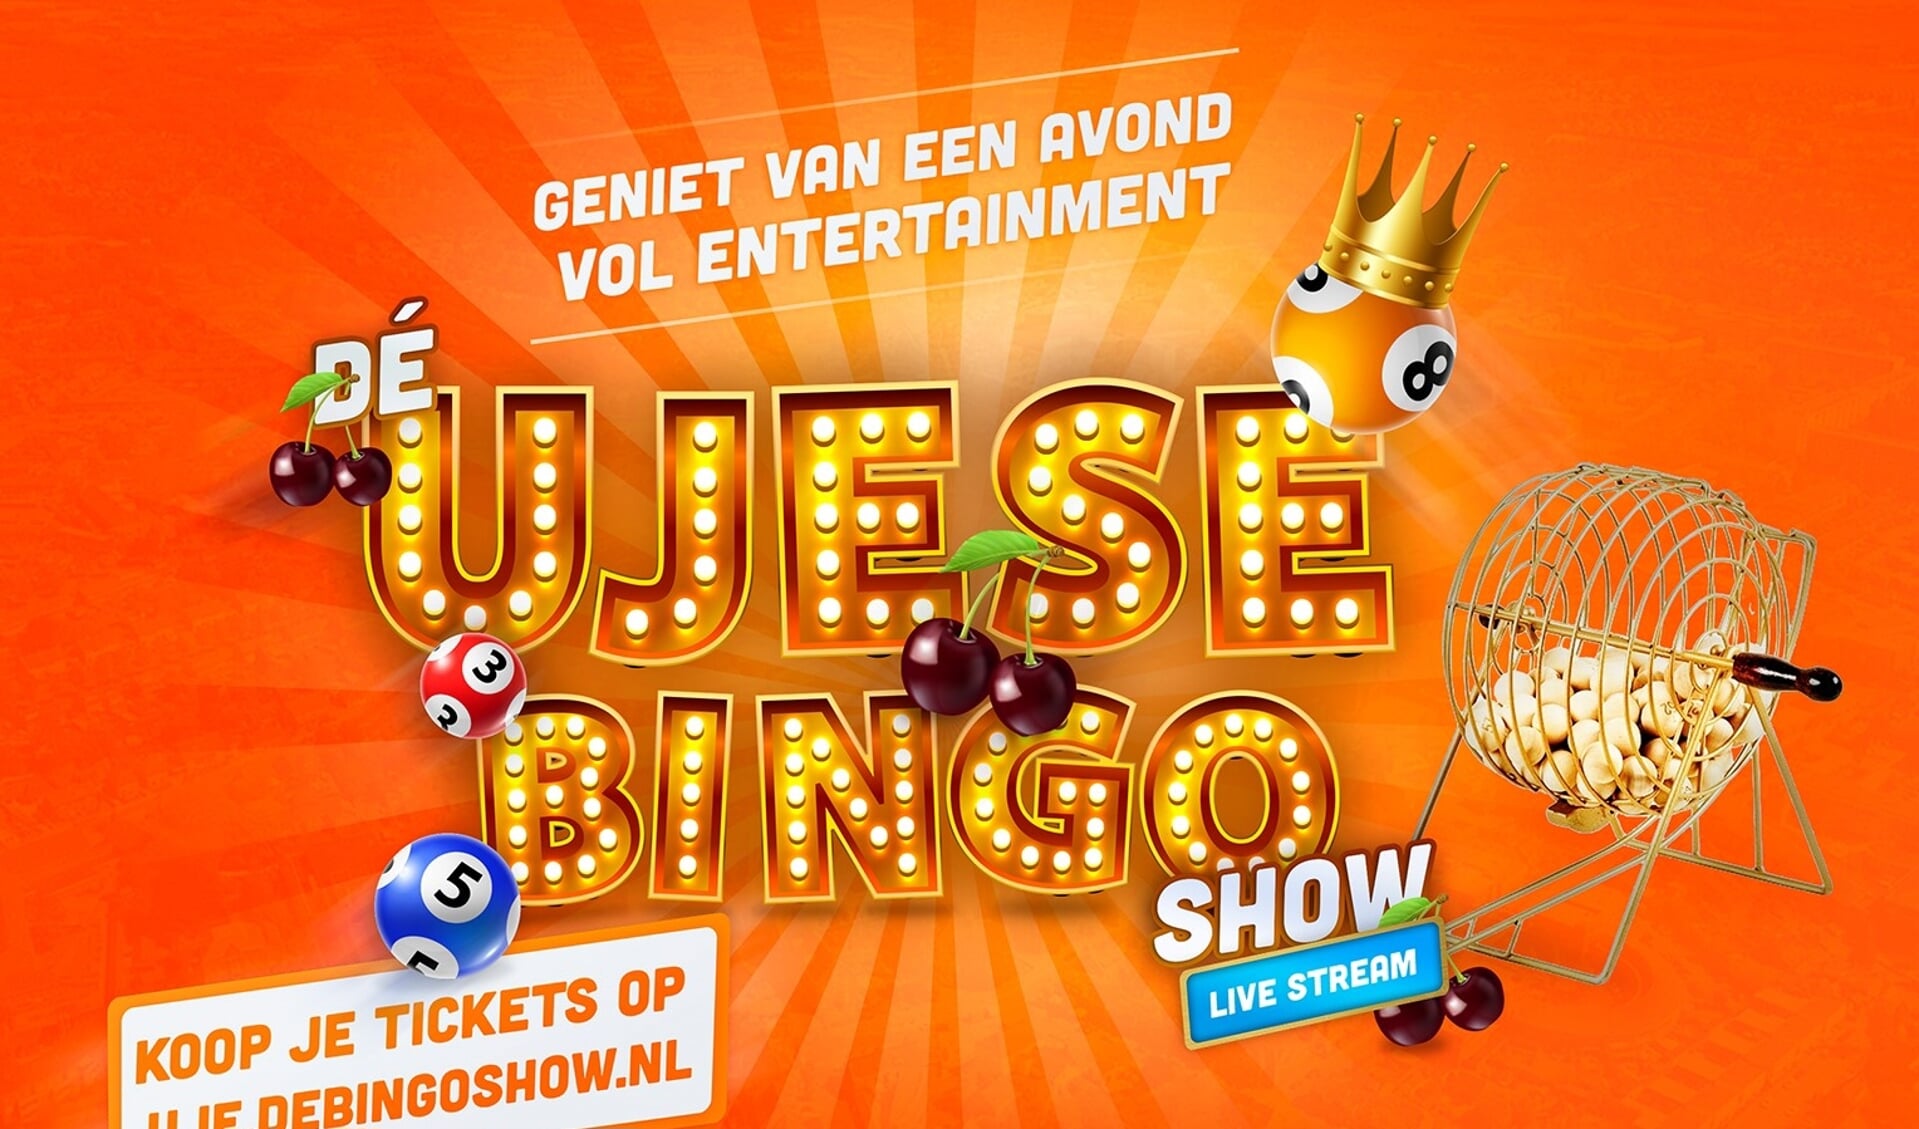 Horecagelegenheden in Uden houden een online bingo vol entertainment. 